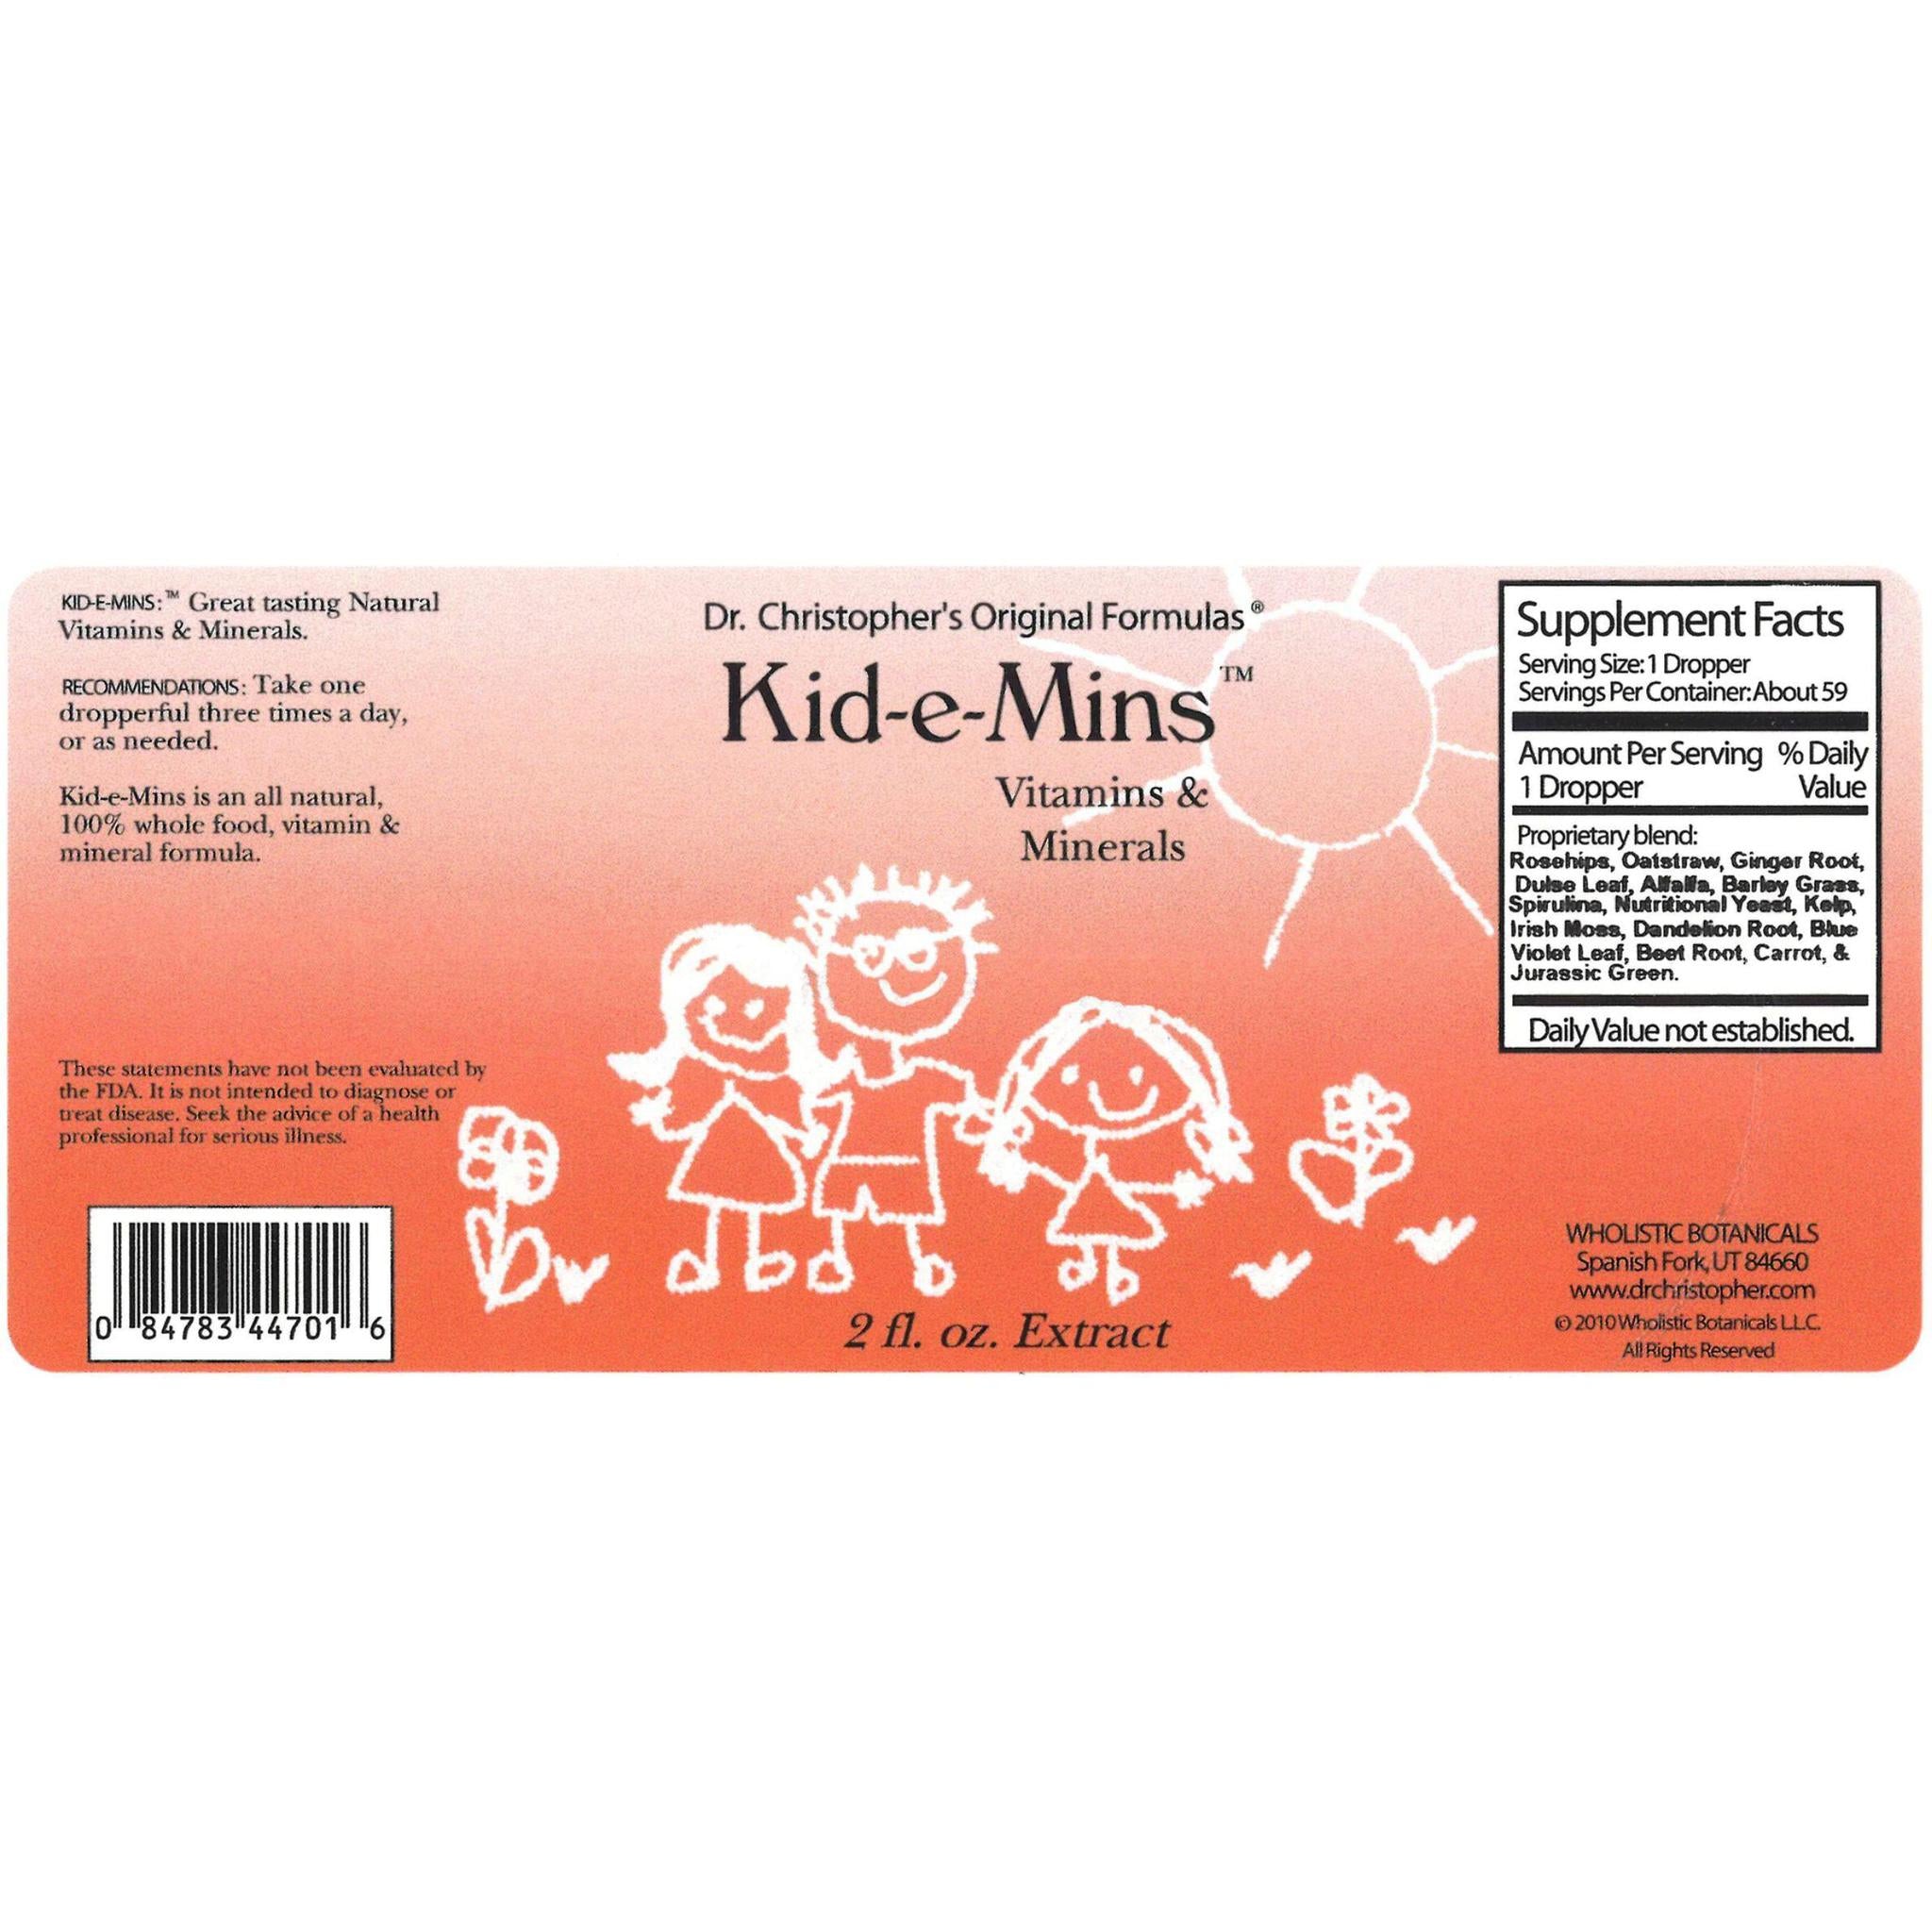 Kid-e-Mins Extract 2 oz